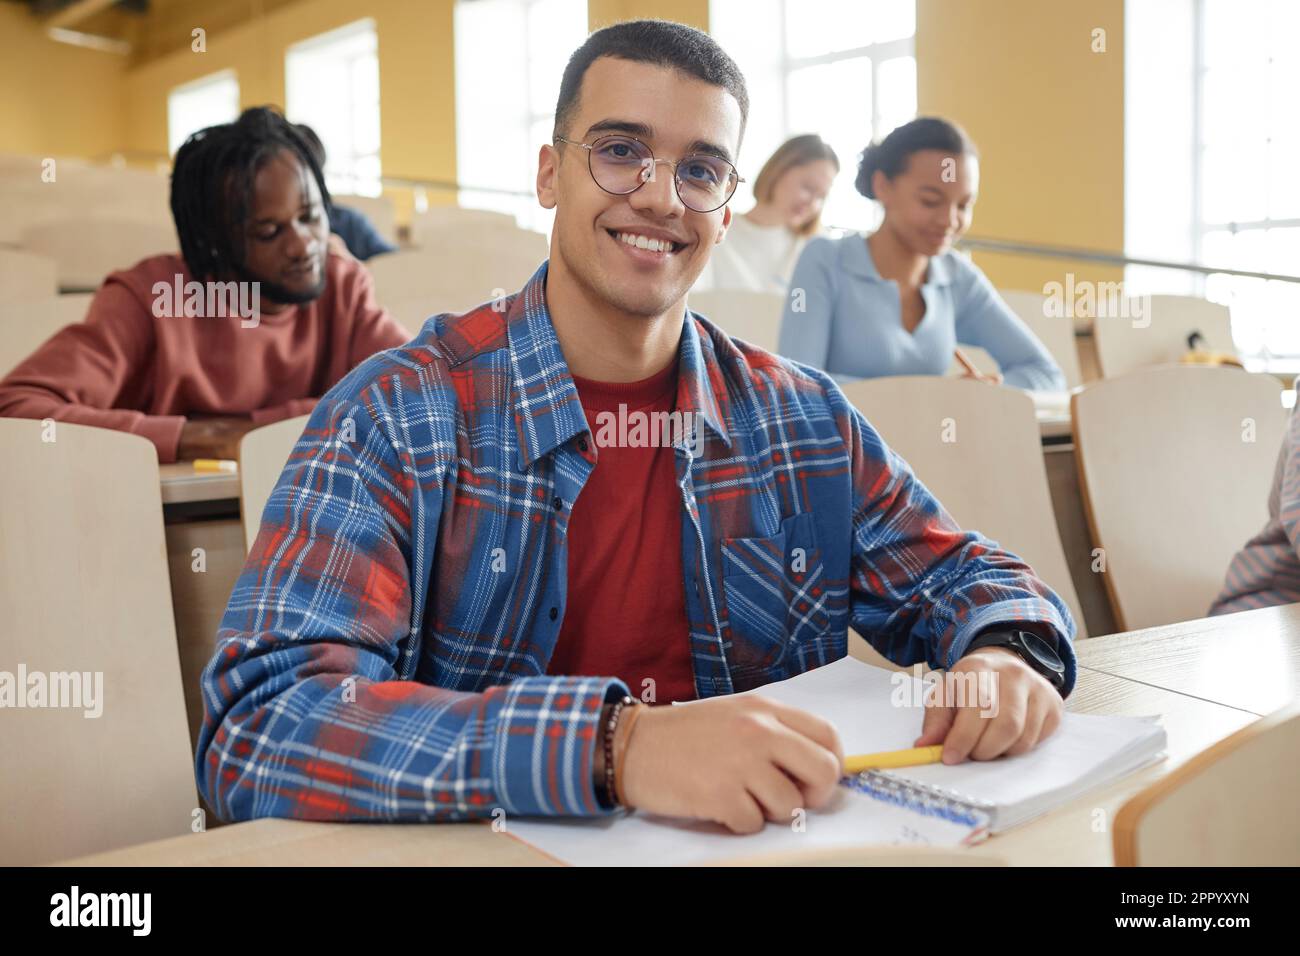 Porträt eines Schülers mit Brille, der vor der Kamera lächelt, während er beim Vortrag am Schreibtisch sitzt Stockfoto